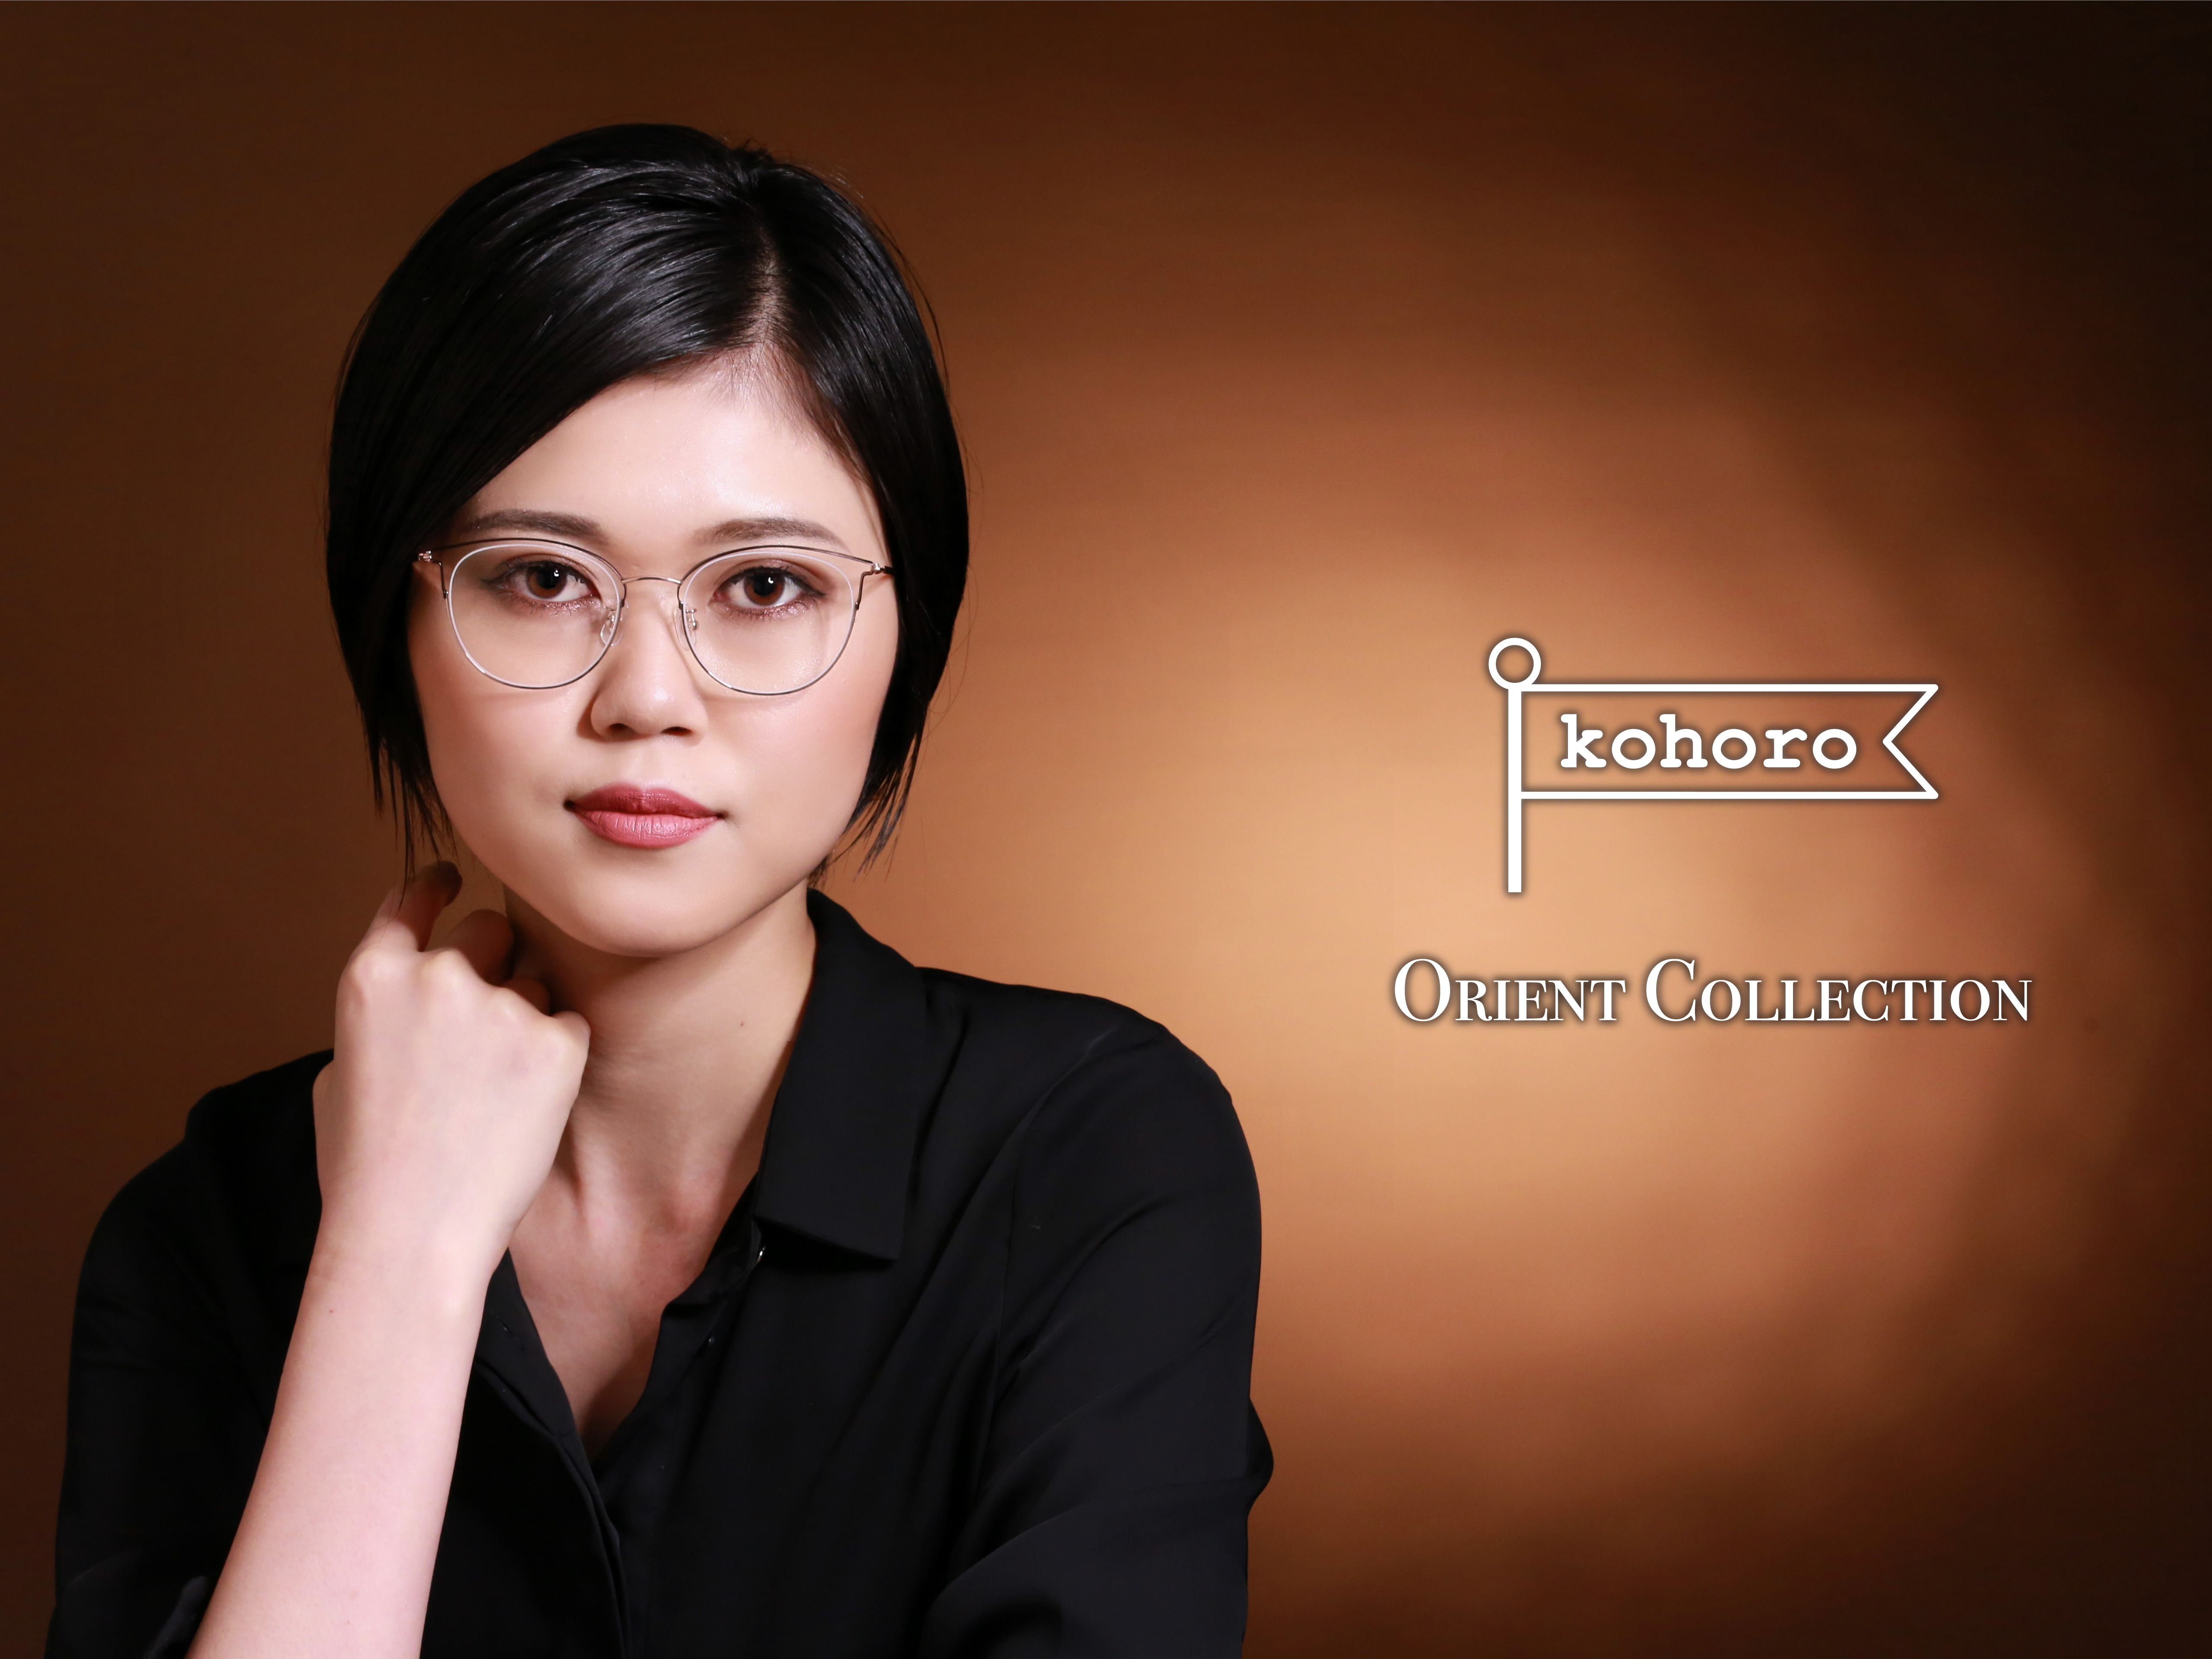 プレスリリース アジア美人になるための3つの美的ポイントをプラスしたメガネ Kohoro Orient Collectionシリーズを4月17日発売 Press 毎日新聞